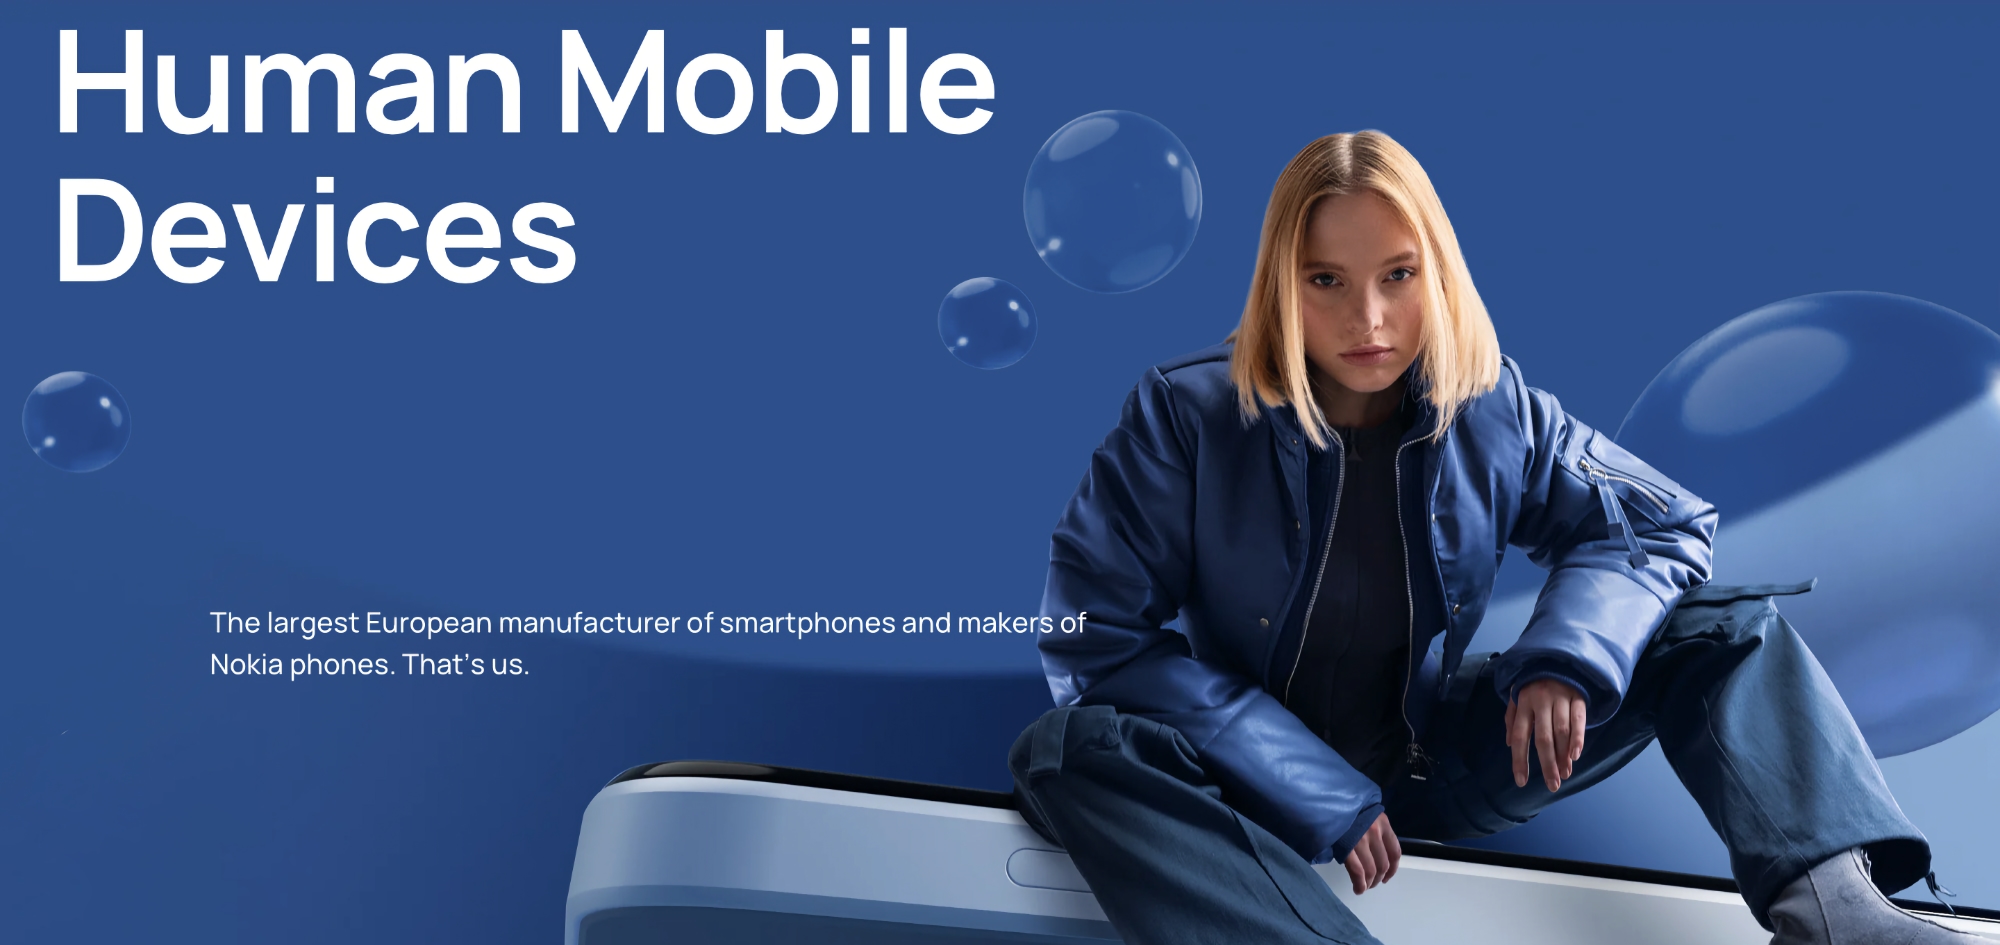 Estrategia multimarca: HMD Global lanzará smartphones Nokia junto a dispositivos de marca